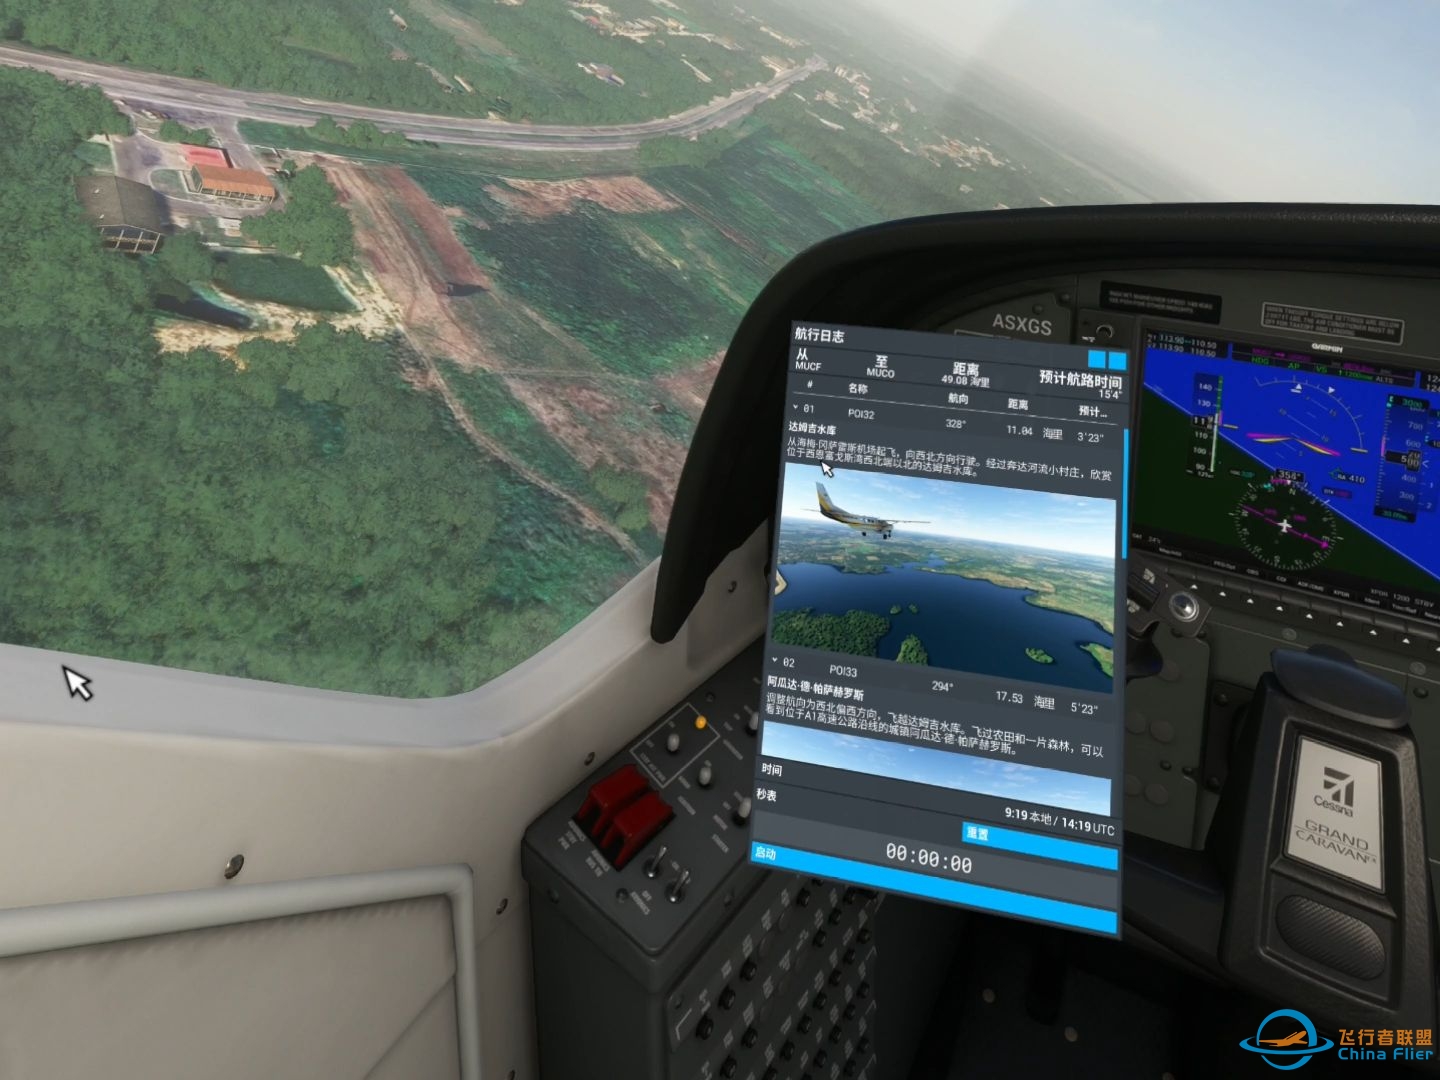 微软模拟飞行 584 VR 古巴圣地亚哥至哈瓦那 郊野之行-8770 